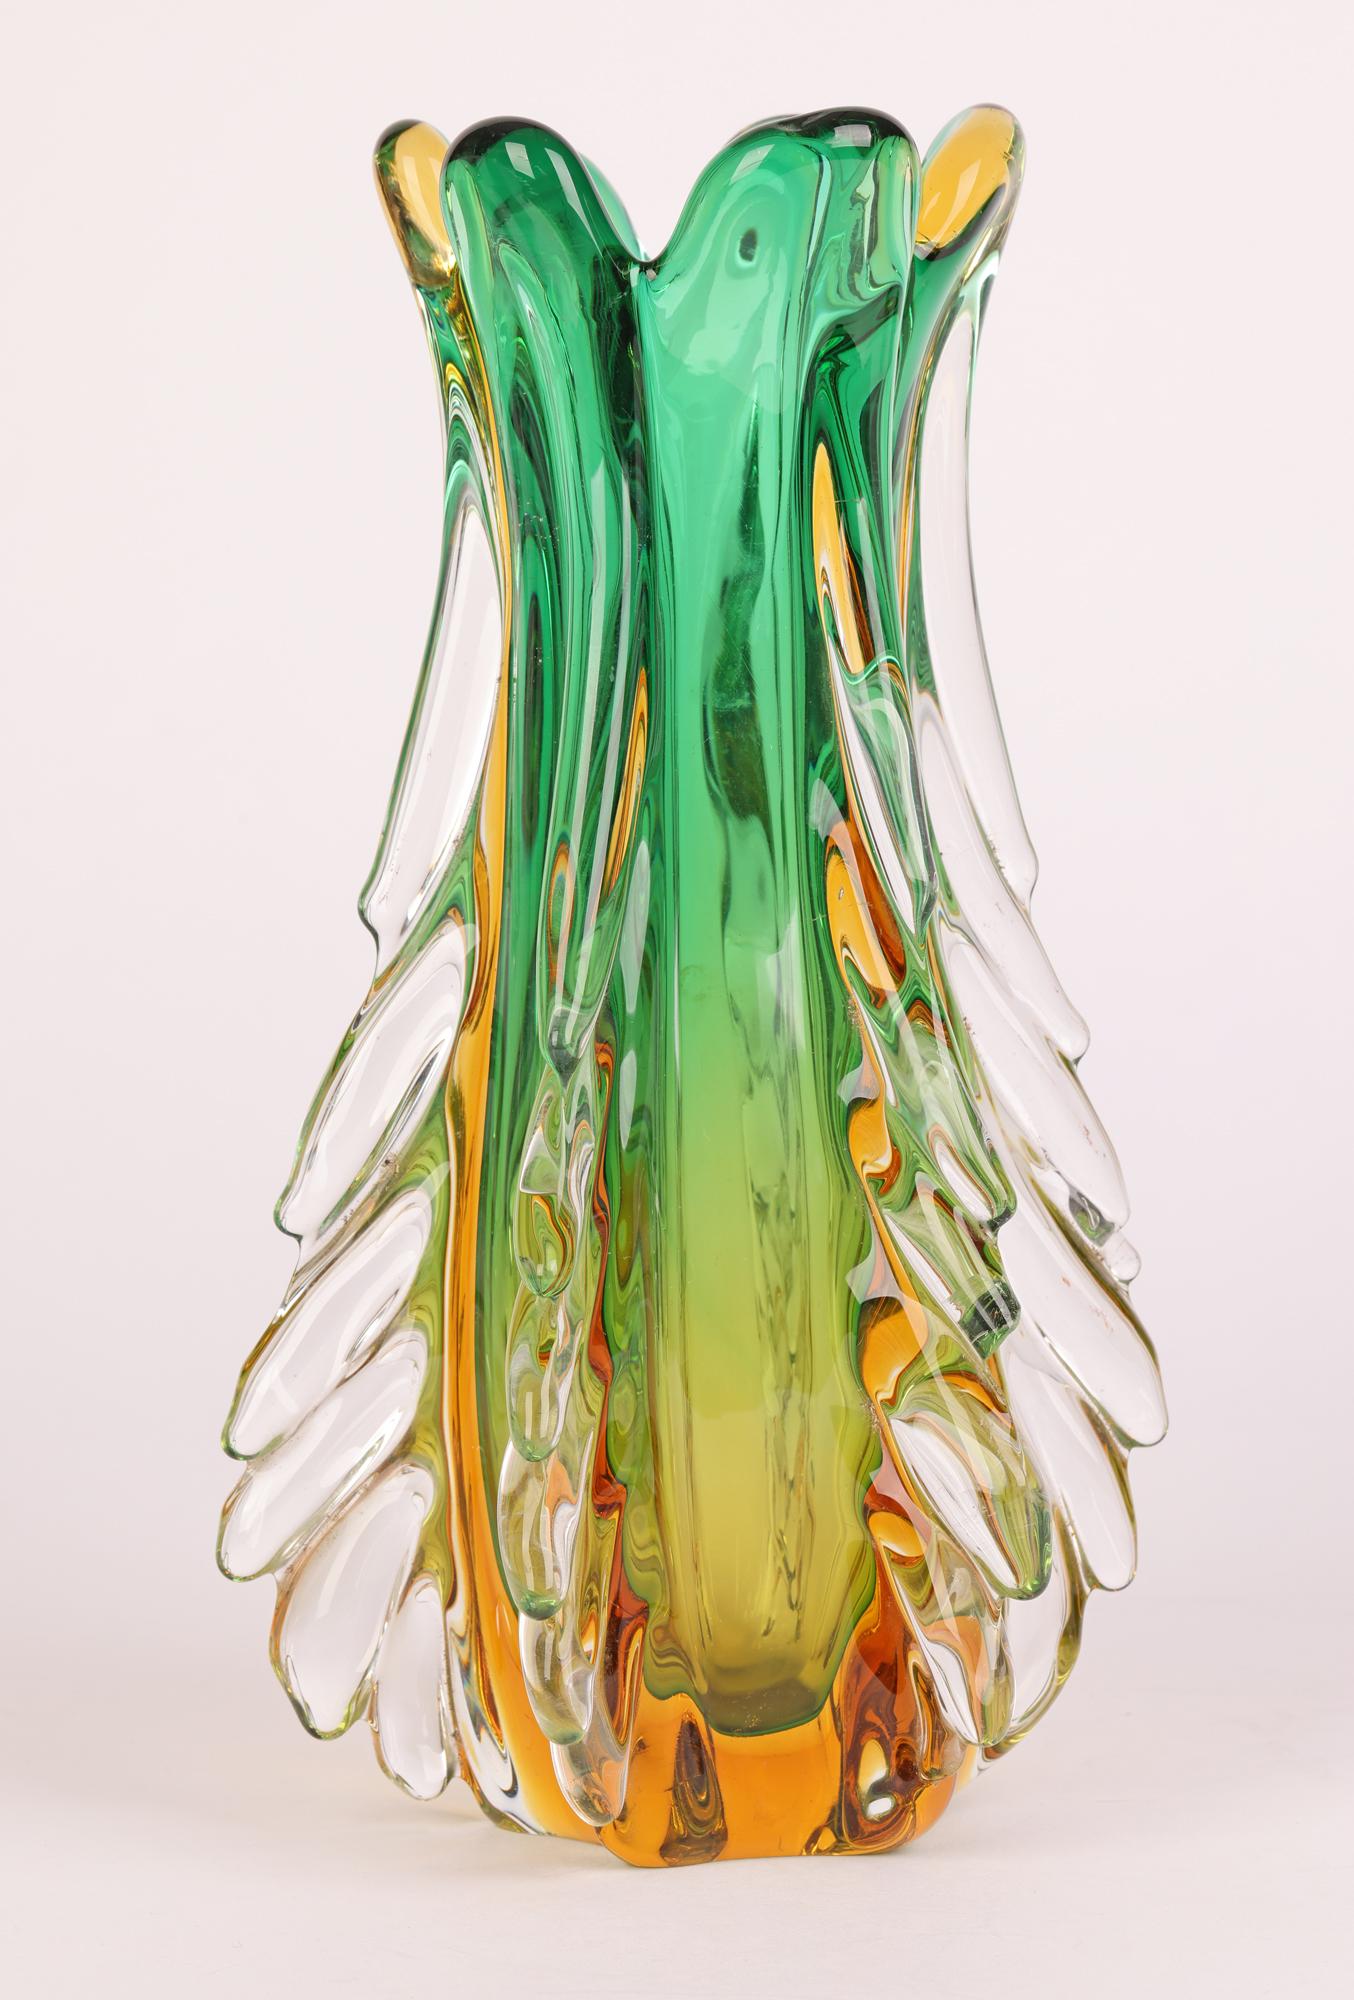 Italian Murano Sommerso Glass Vase by Flavio Poli for Seguso Vetri D’Arte 8